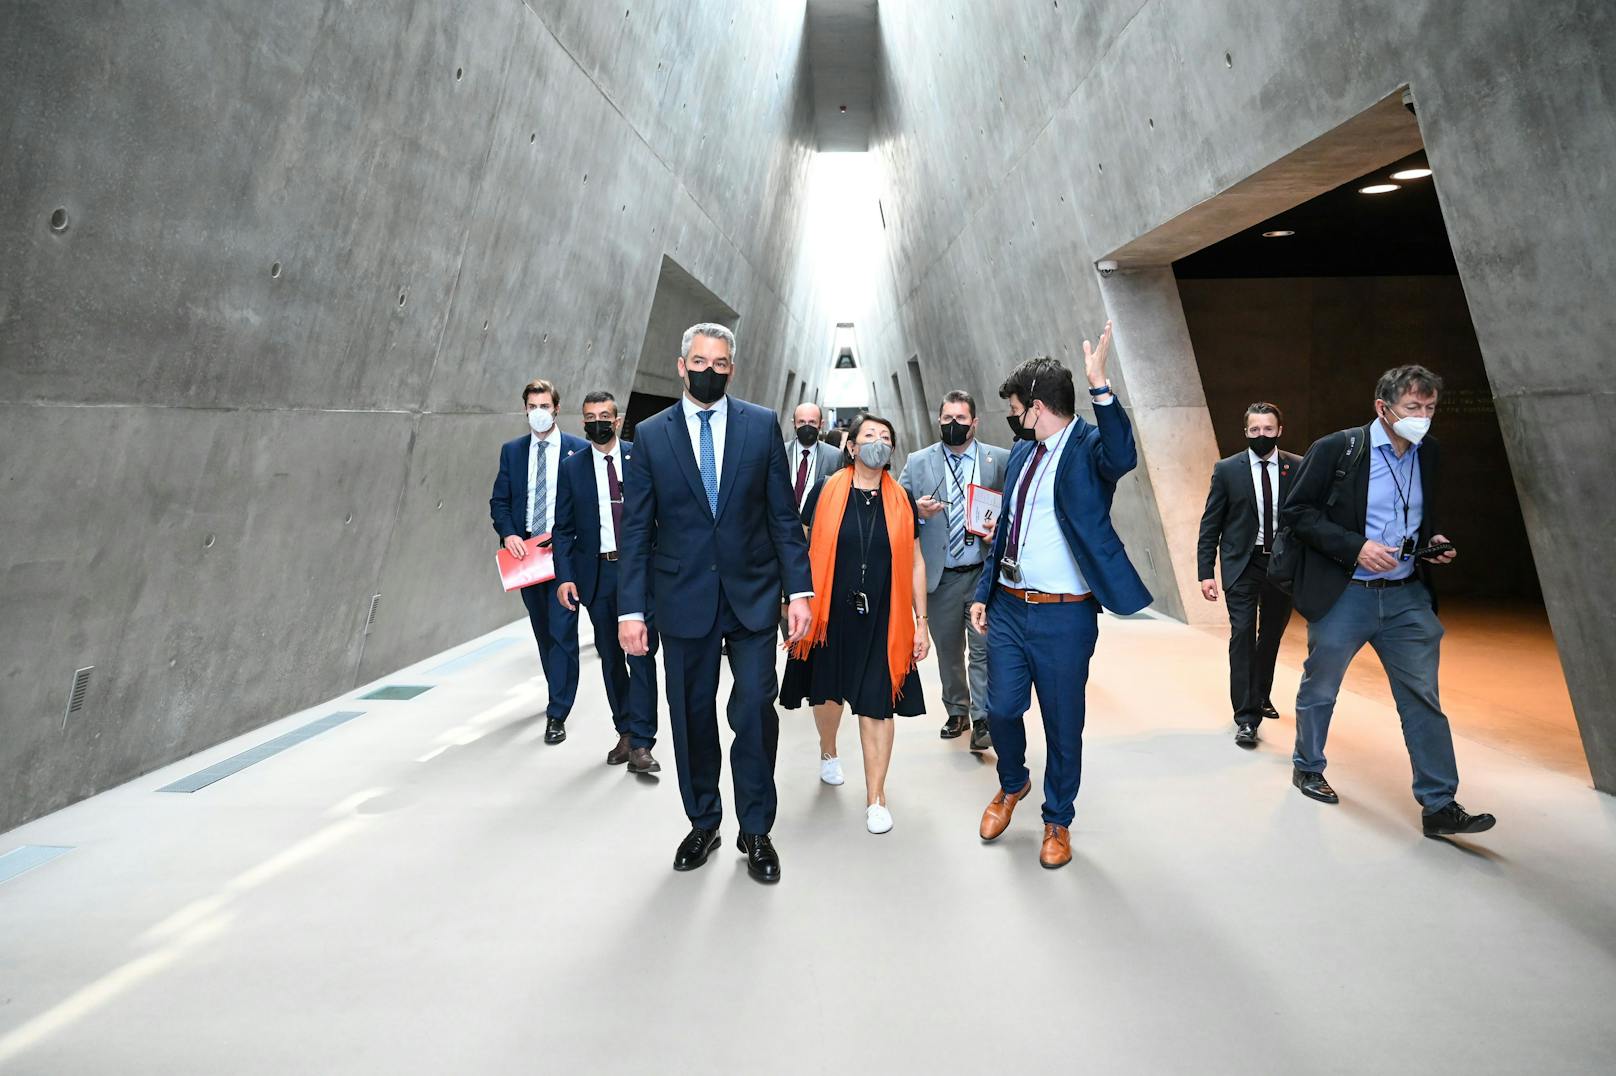 Weiters hat Innenminister Nehammer im Rahmen seiner Israel-Reise die Holocaustgedenkstätte Yad Vashem in Jerusalem besucht.